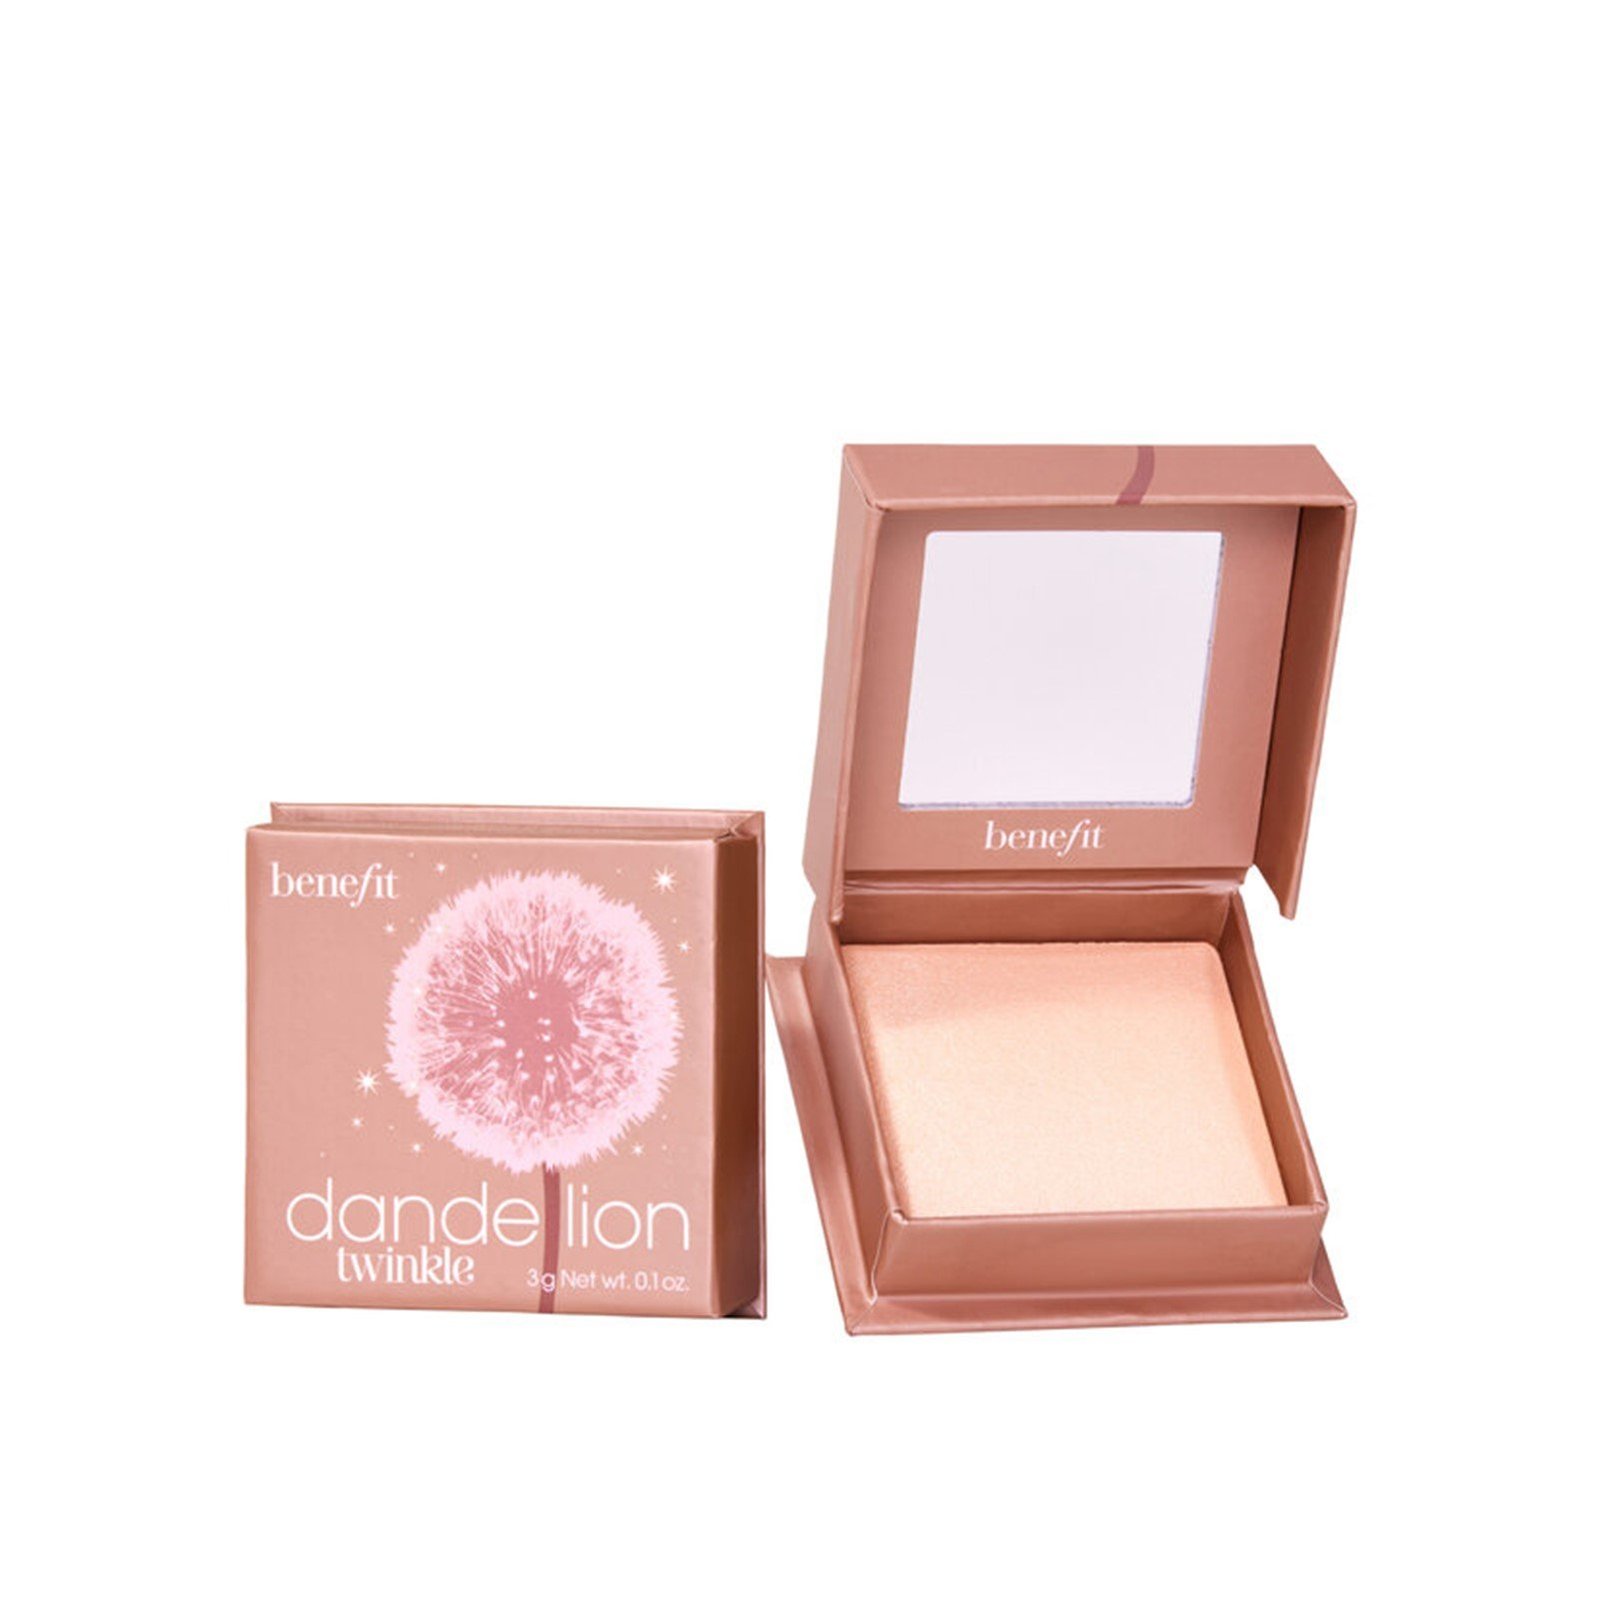 Benefit Dandelion Twinkle Soft Nude-Pink Highlighter 3g (0.1oz)